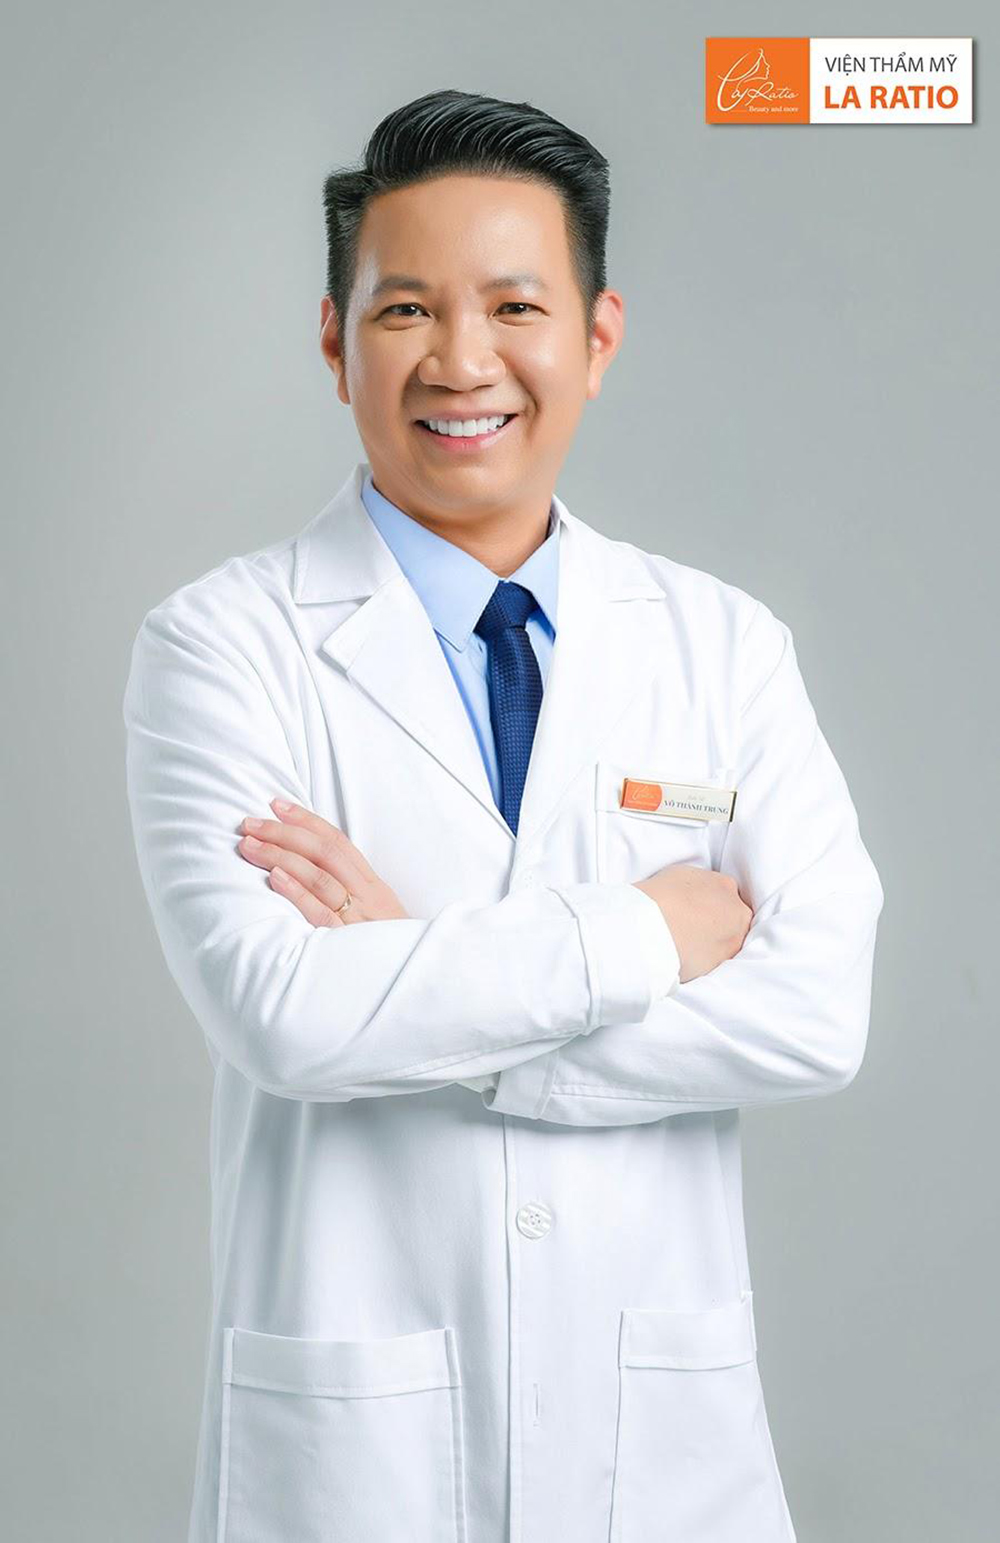 Bác sĩ Võ Thành Trung - Giám đốc điều hành - bác sĩ chuyên khoa Thẩm mỹ